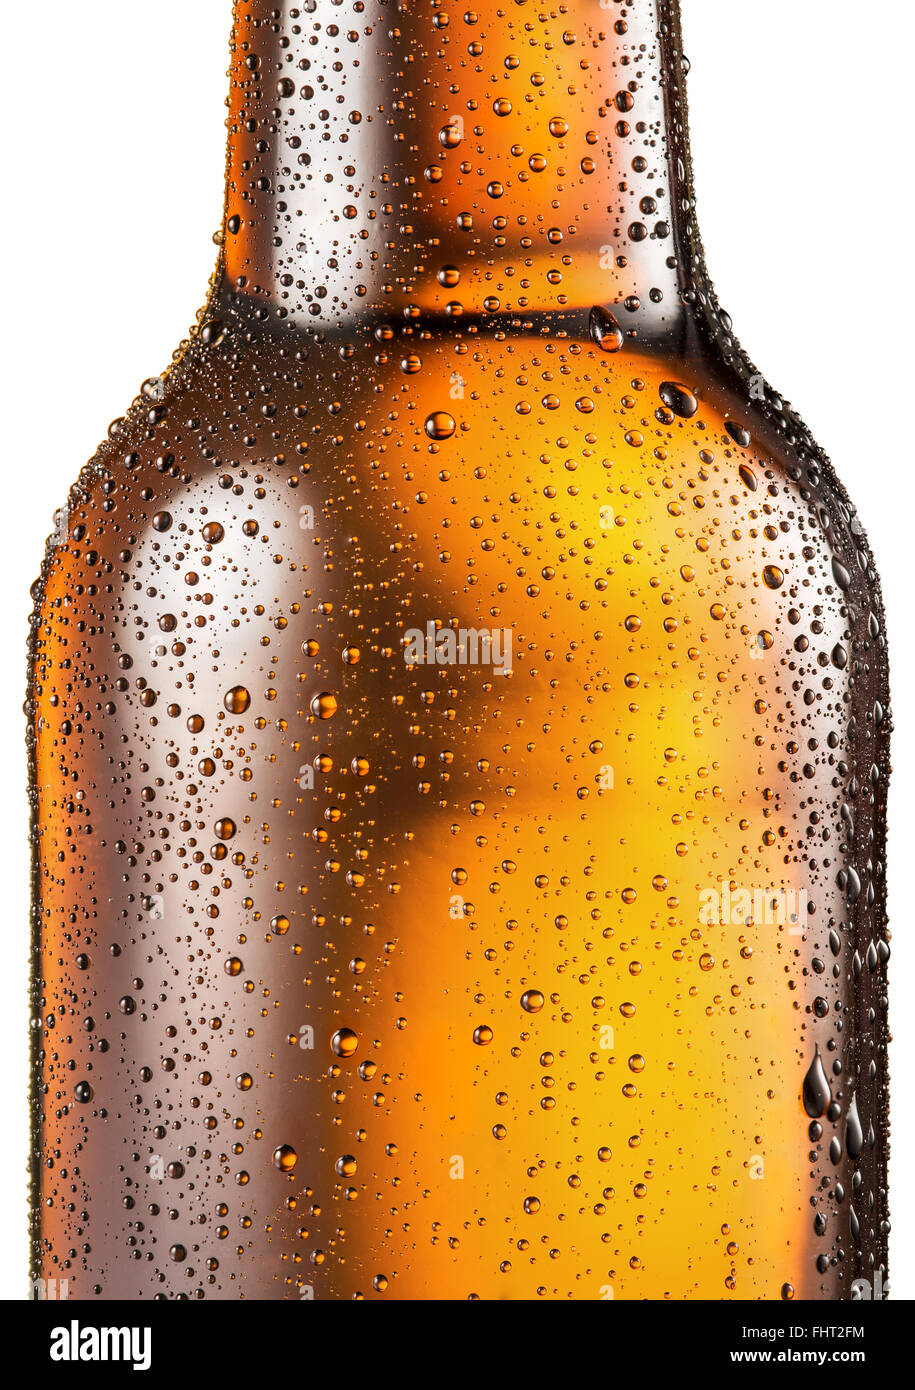 Kalte Flasche Bier mit Kondenswasser tropft auf es. Datei enthält  Beschneidungspfade Stockfotografie - Alamy